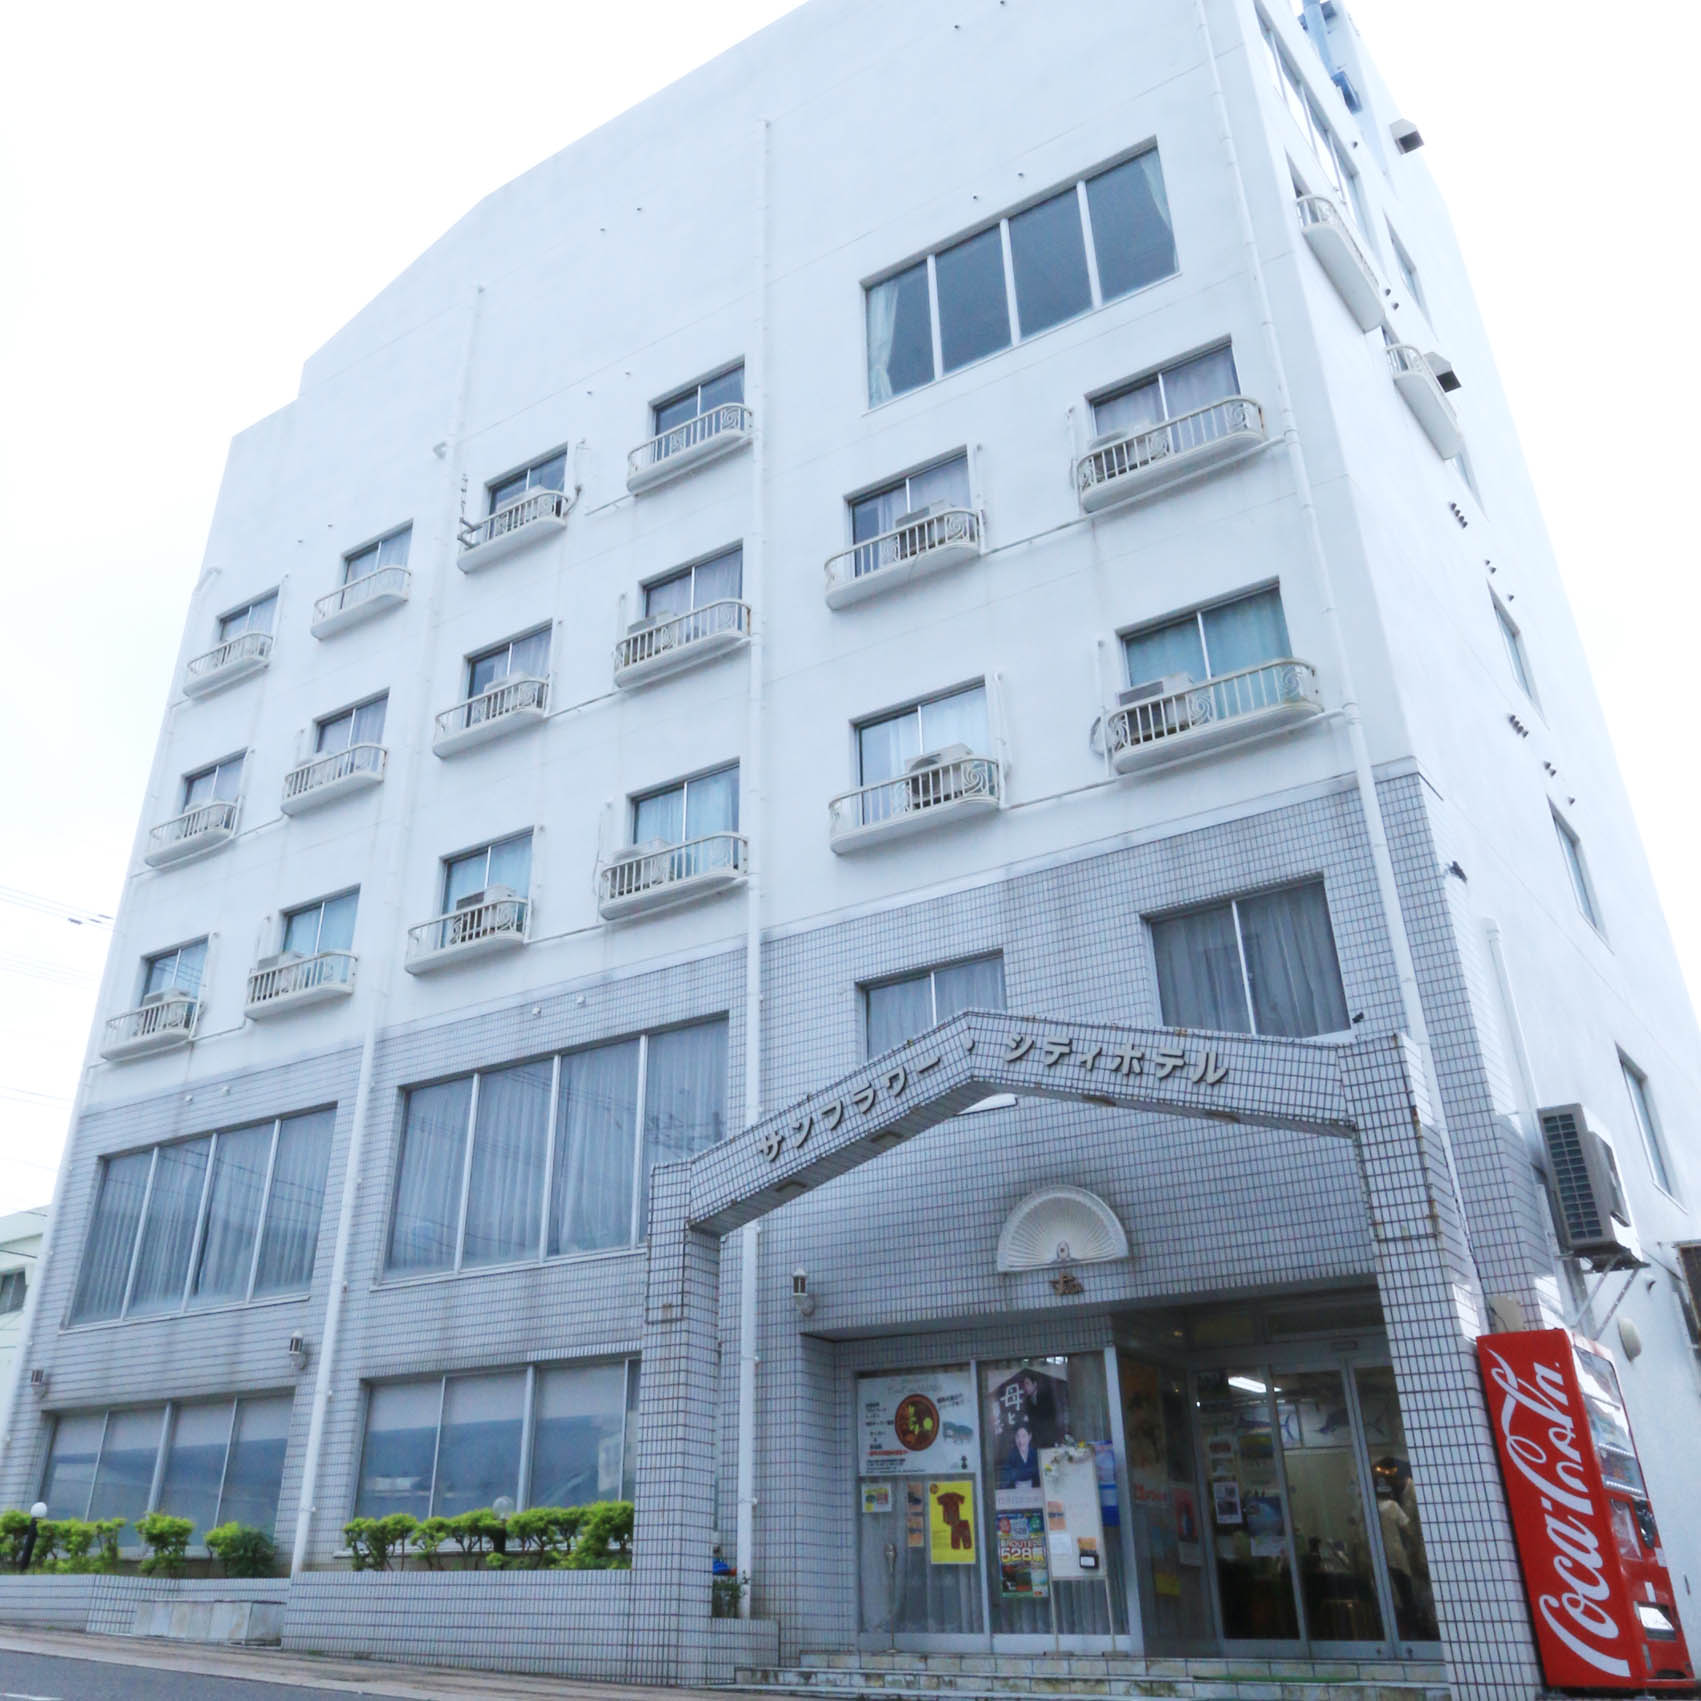 Sunflower City Hotel (Amami Oshima)